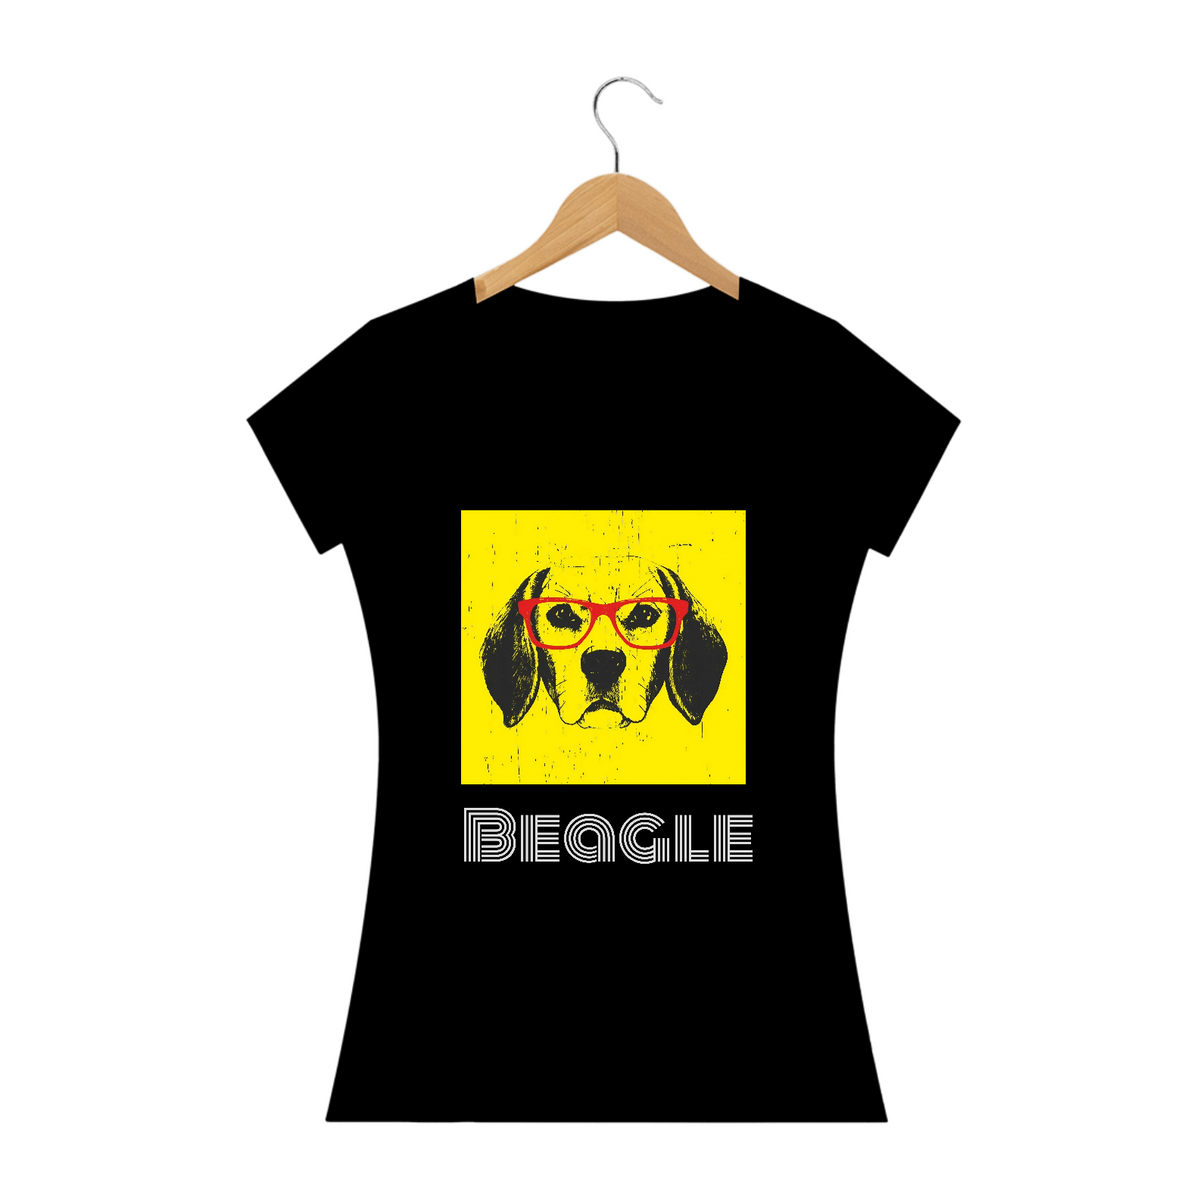 Nome do produto: Beagle de oculos / t-shirt Women Beagle